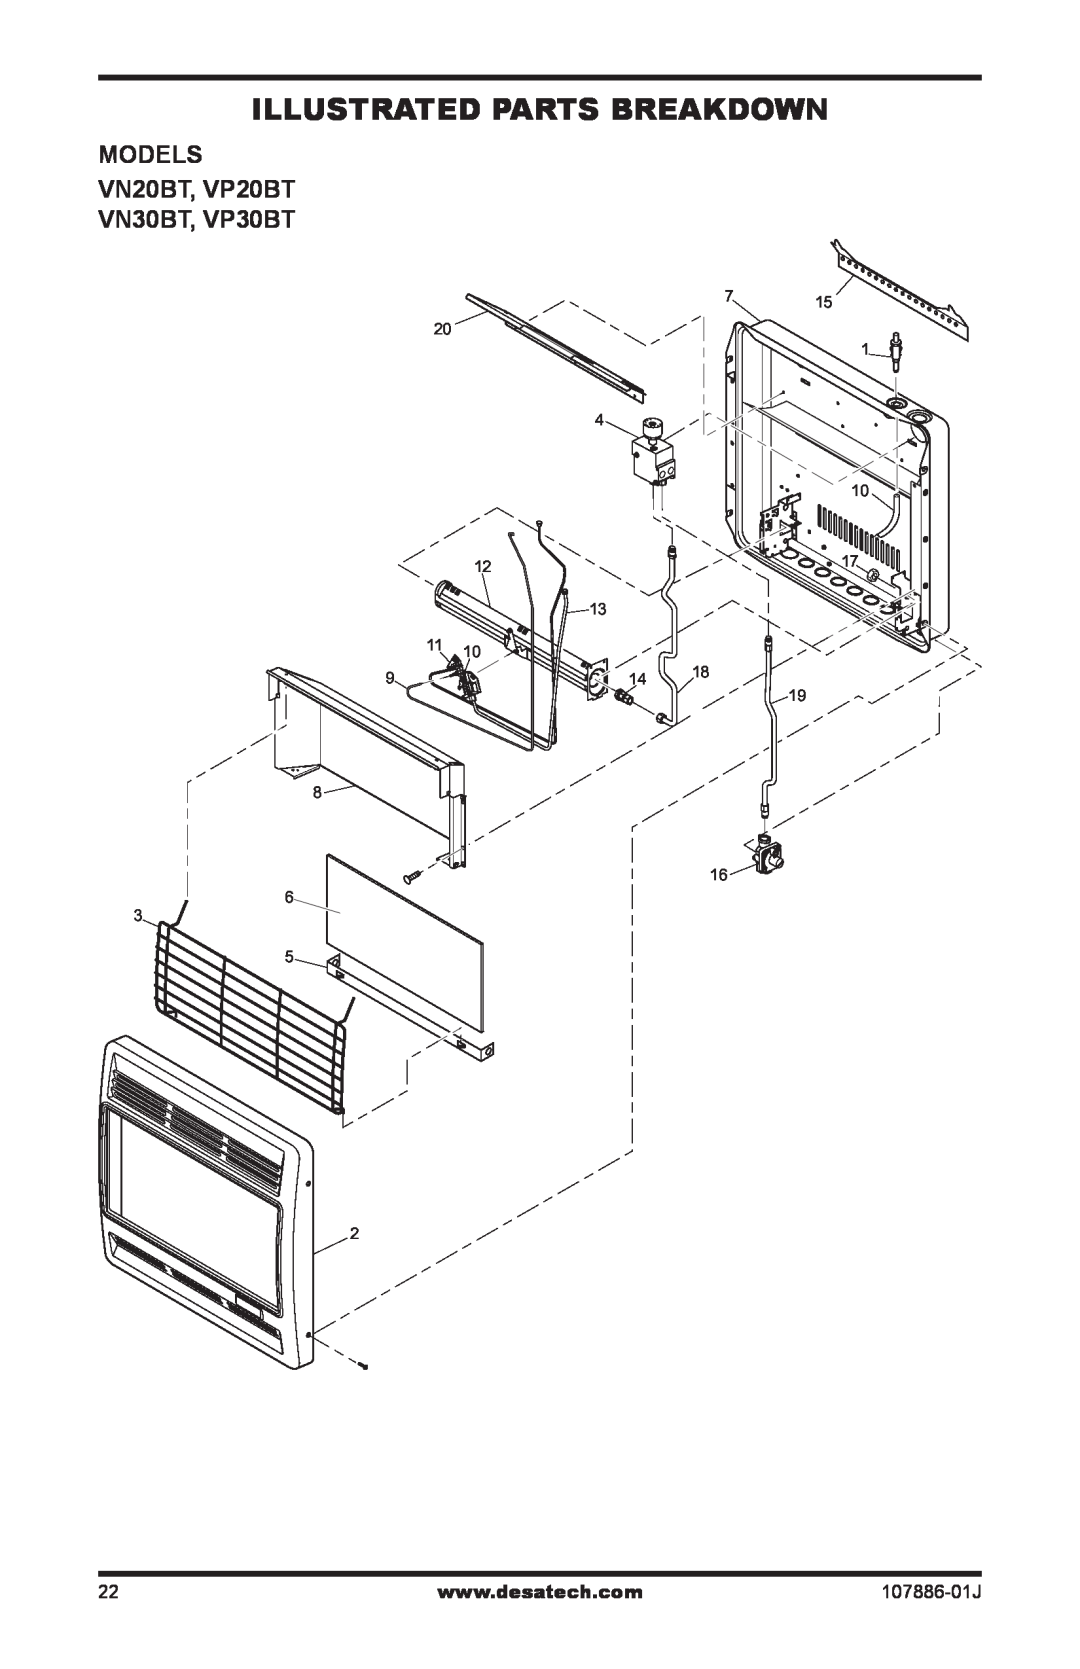 Desa installation manual Illustrated Parts Breakdown, MODELS VN20BT, VP20BT VN30BT, VP30BT, 107886-01J 